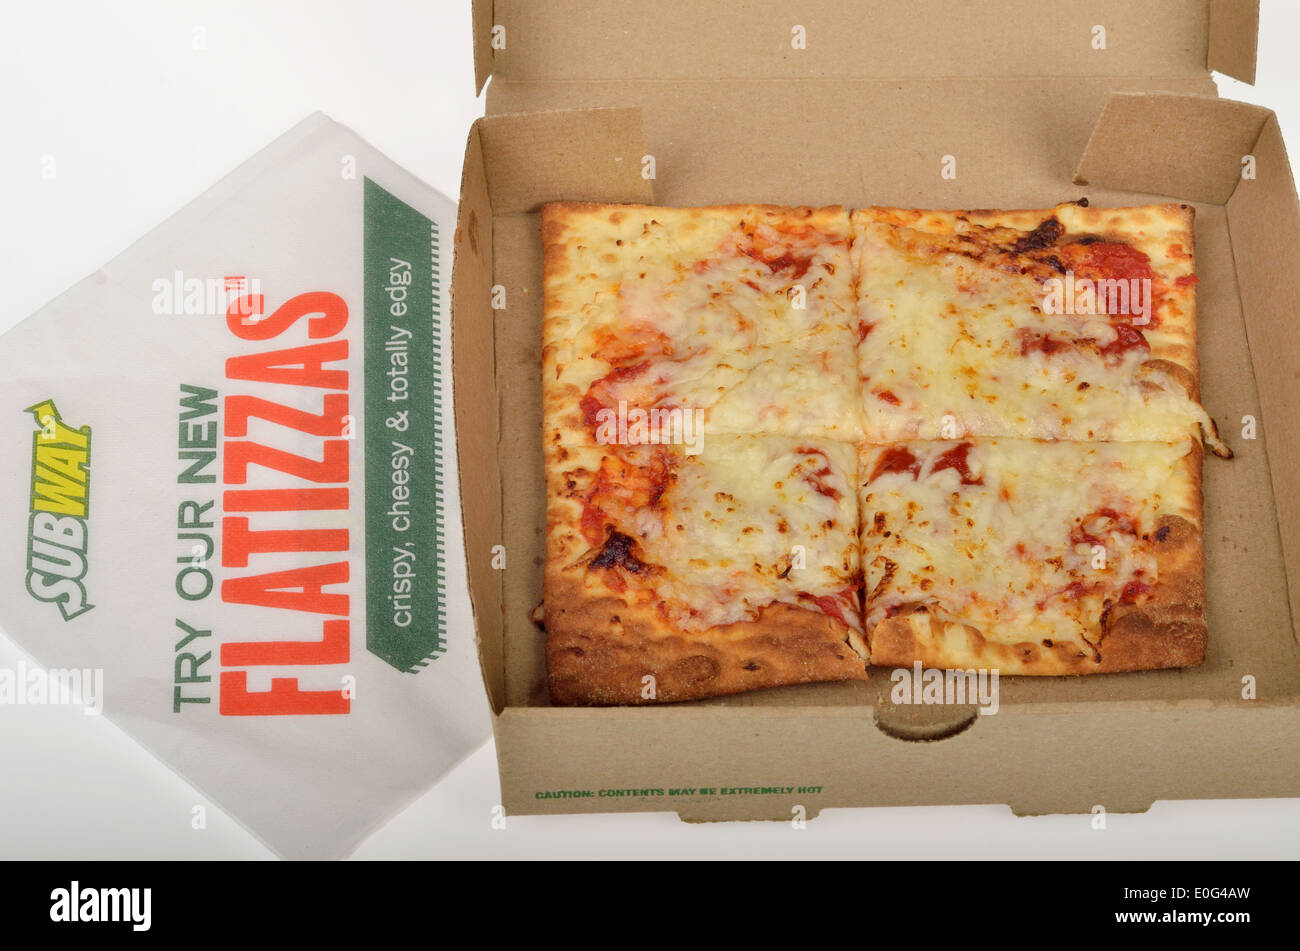 U-Bahn Fast-Food Flatizza Käse quadratische Pizza in Box-Verpackung auf weißem Hintergrund, USA. Stockfoto